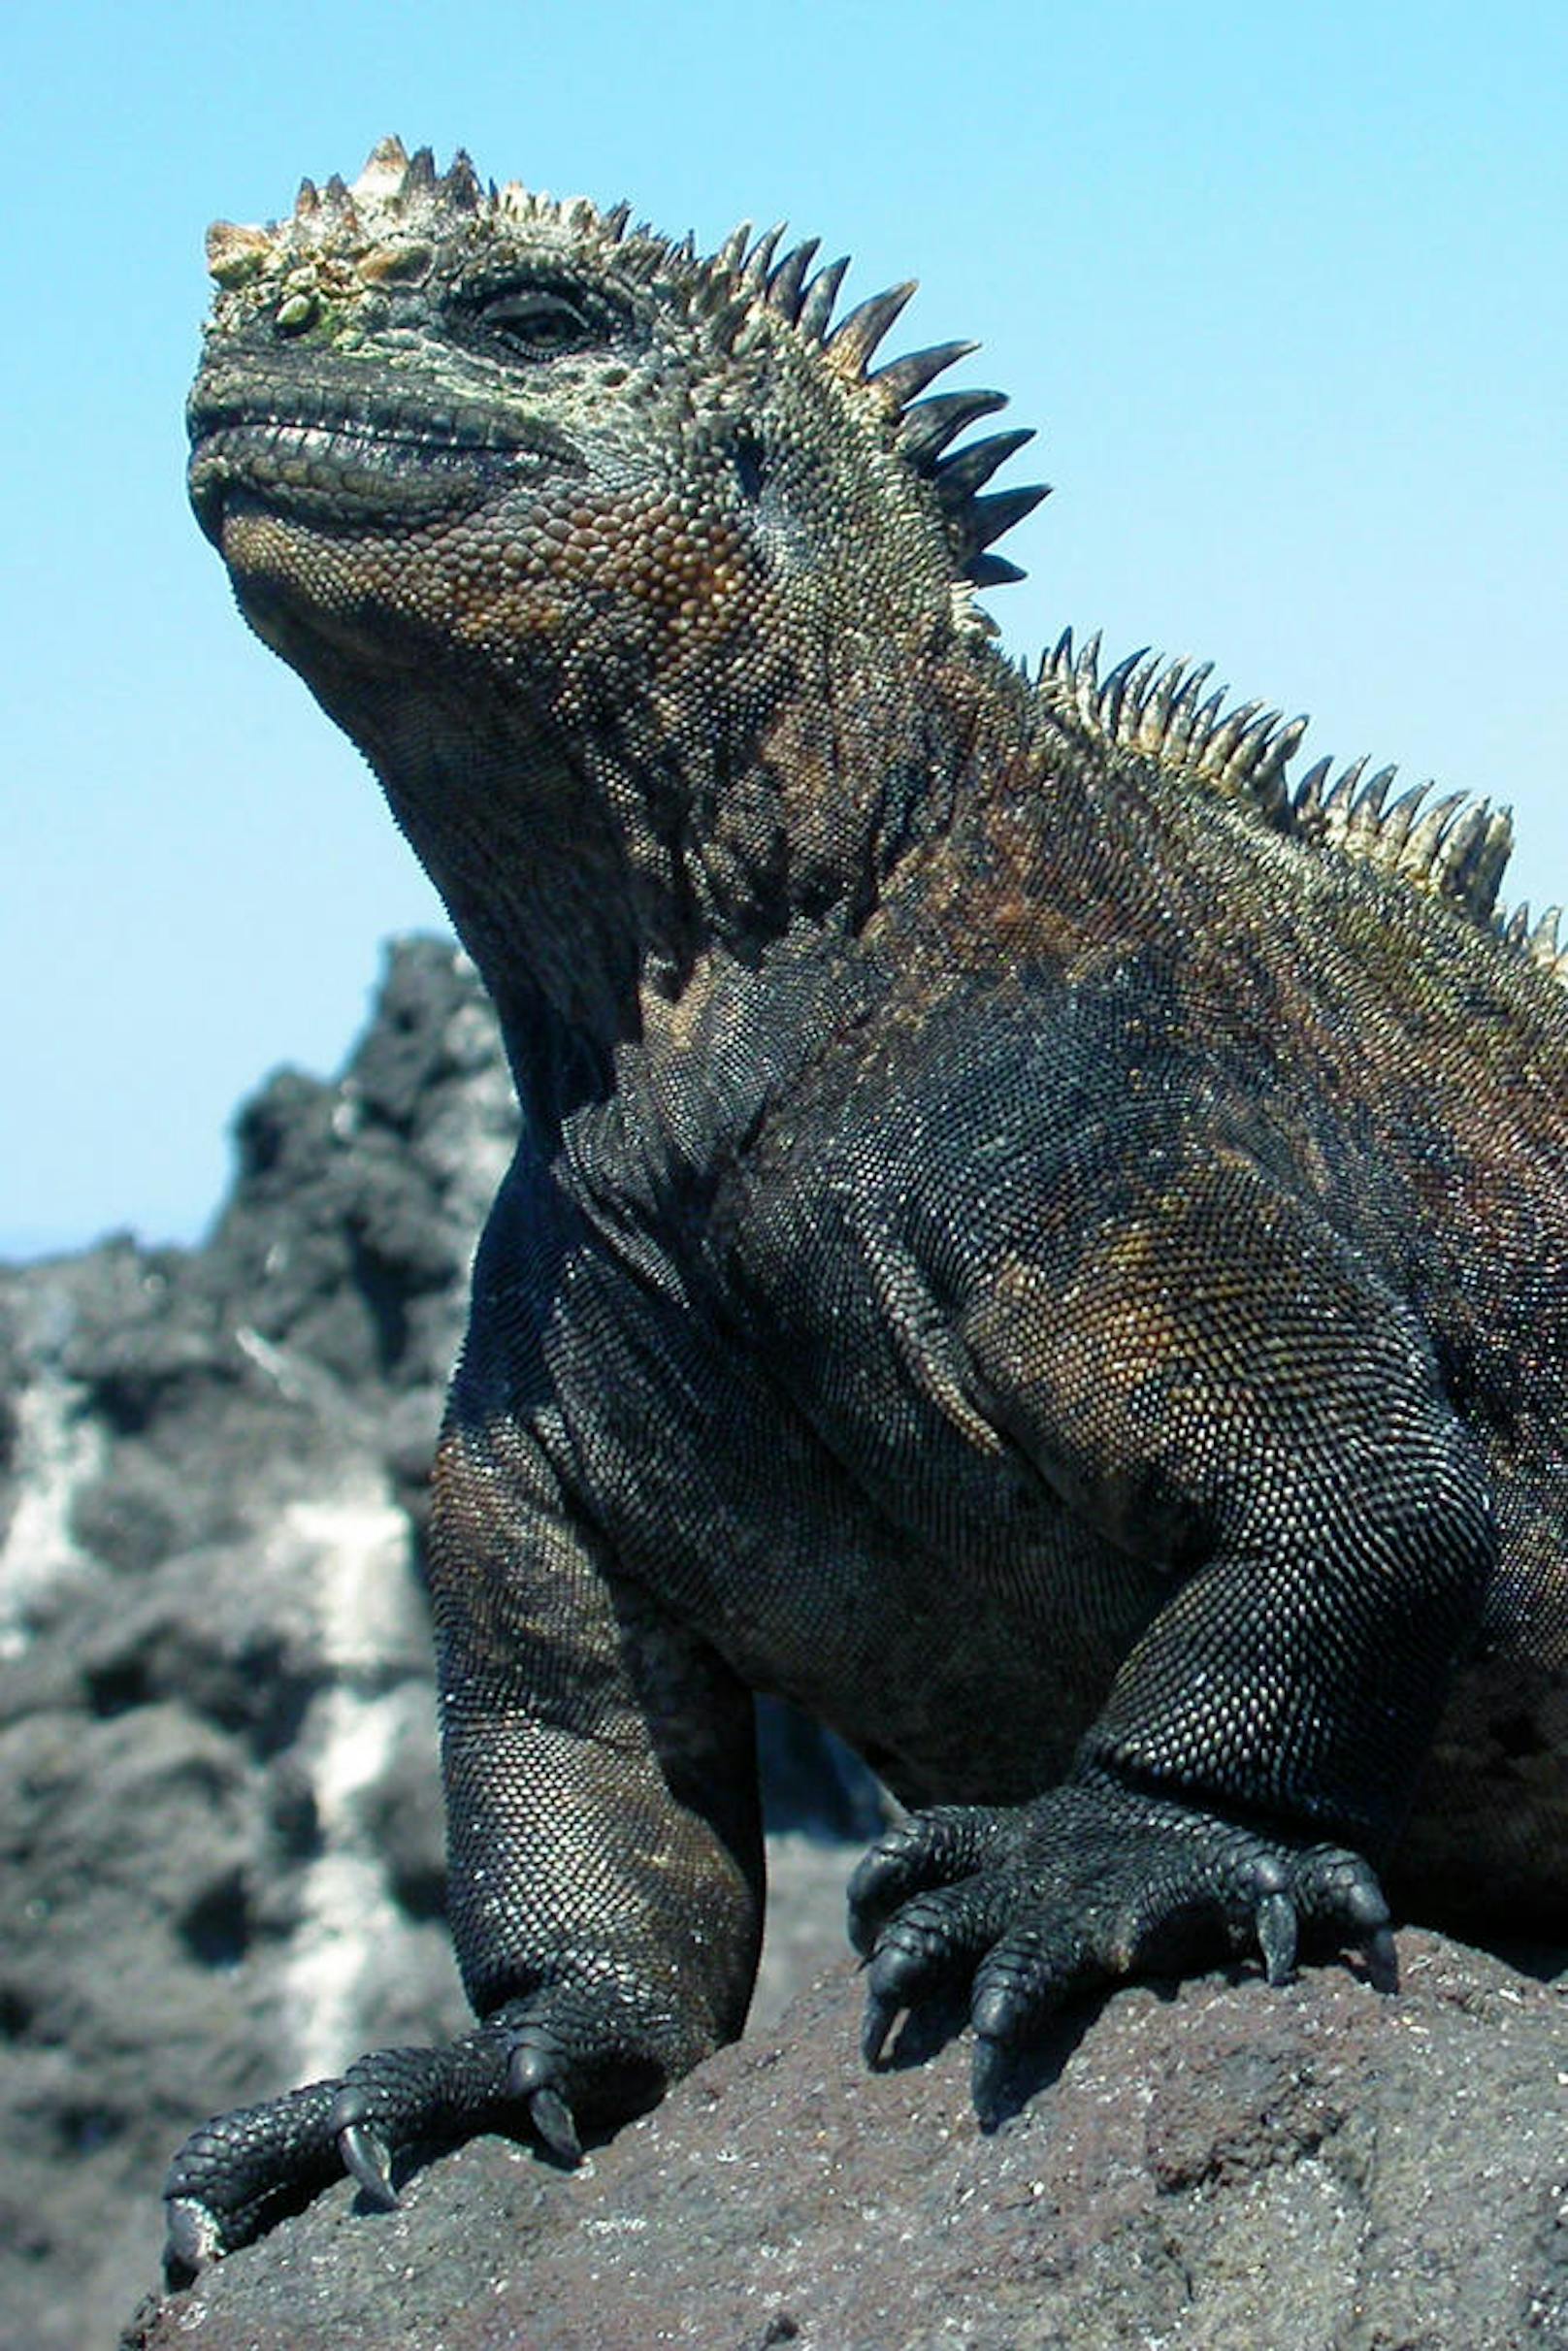 Der Grund: Die Forscher gehen davon aus, dass Meerechsen die Filmemacher bei der Schaffung von Godzilla inspiriert haben, wie sie im Fachmagazin "Zoological Journal of the Linnean Society" schreiben.